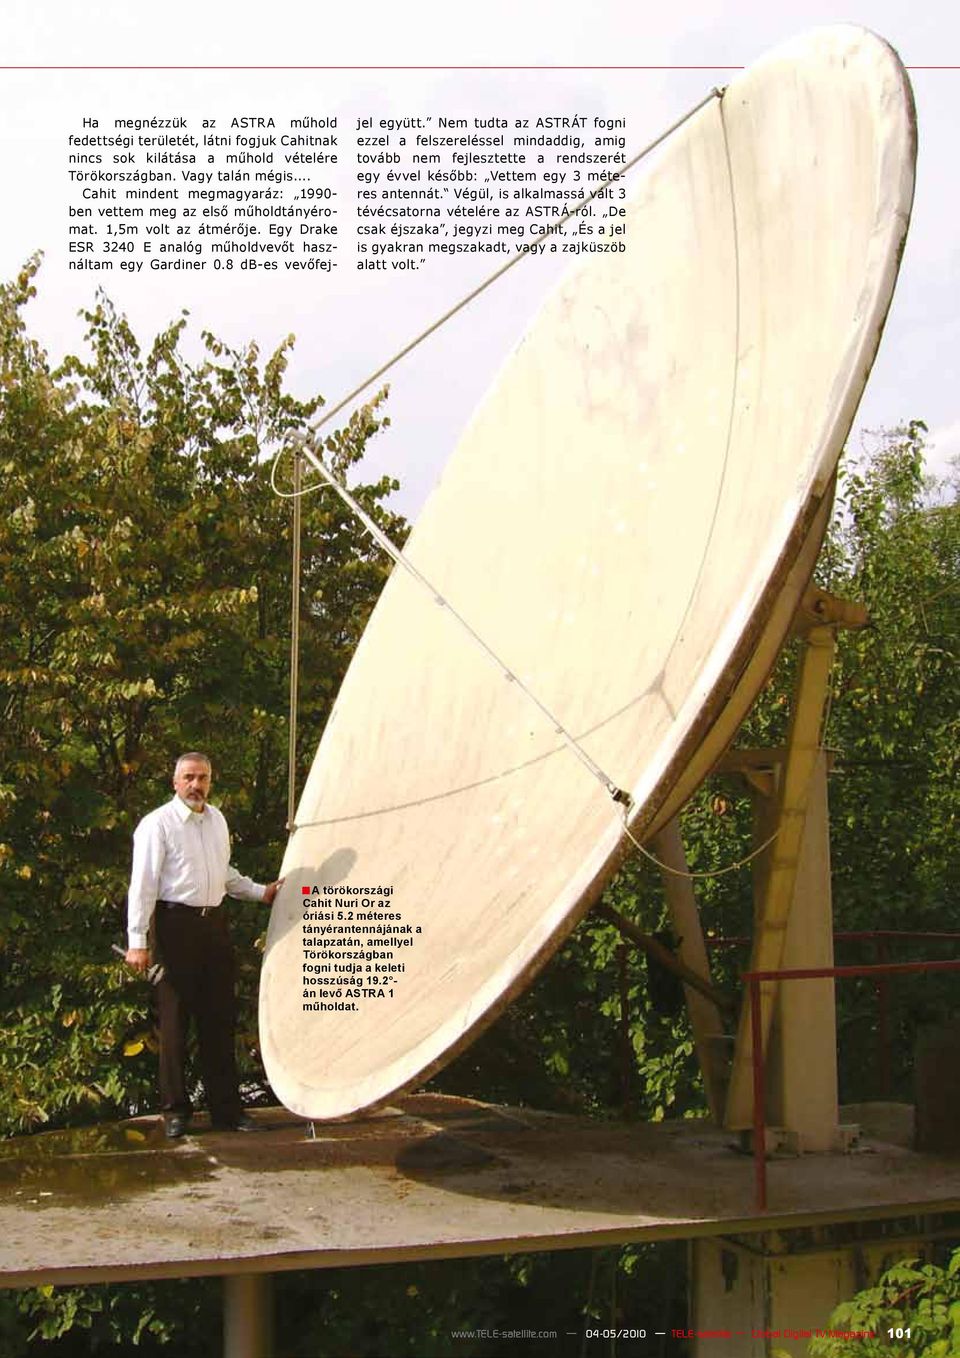 Nem tudta az ASTRÁT fogni ezzel a felszereléssel mindaddig, amig tovább nem fejlesztette a rendszerét egy évvel később: Vettem egy 3 méteres antennát.